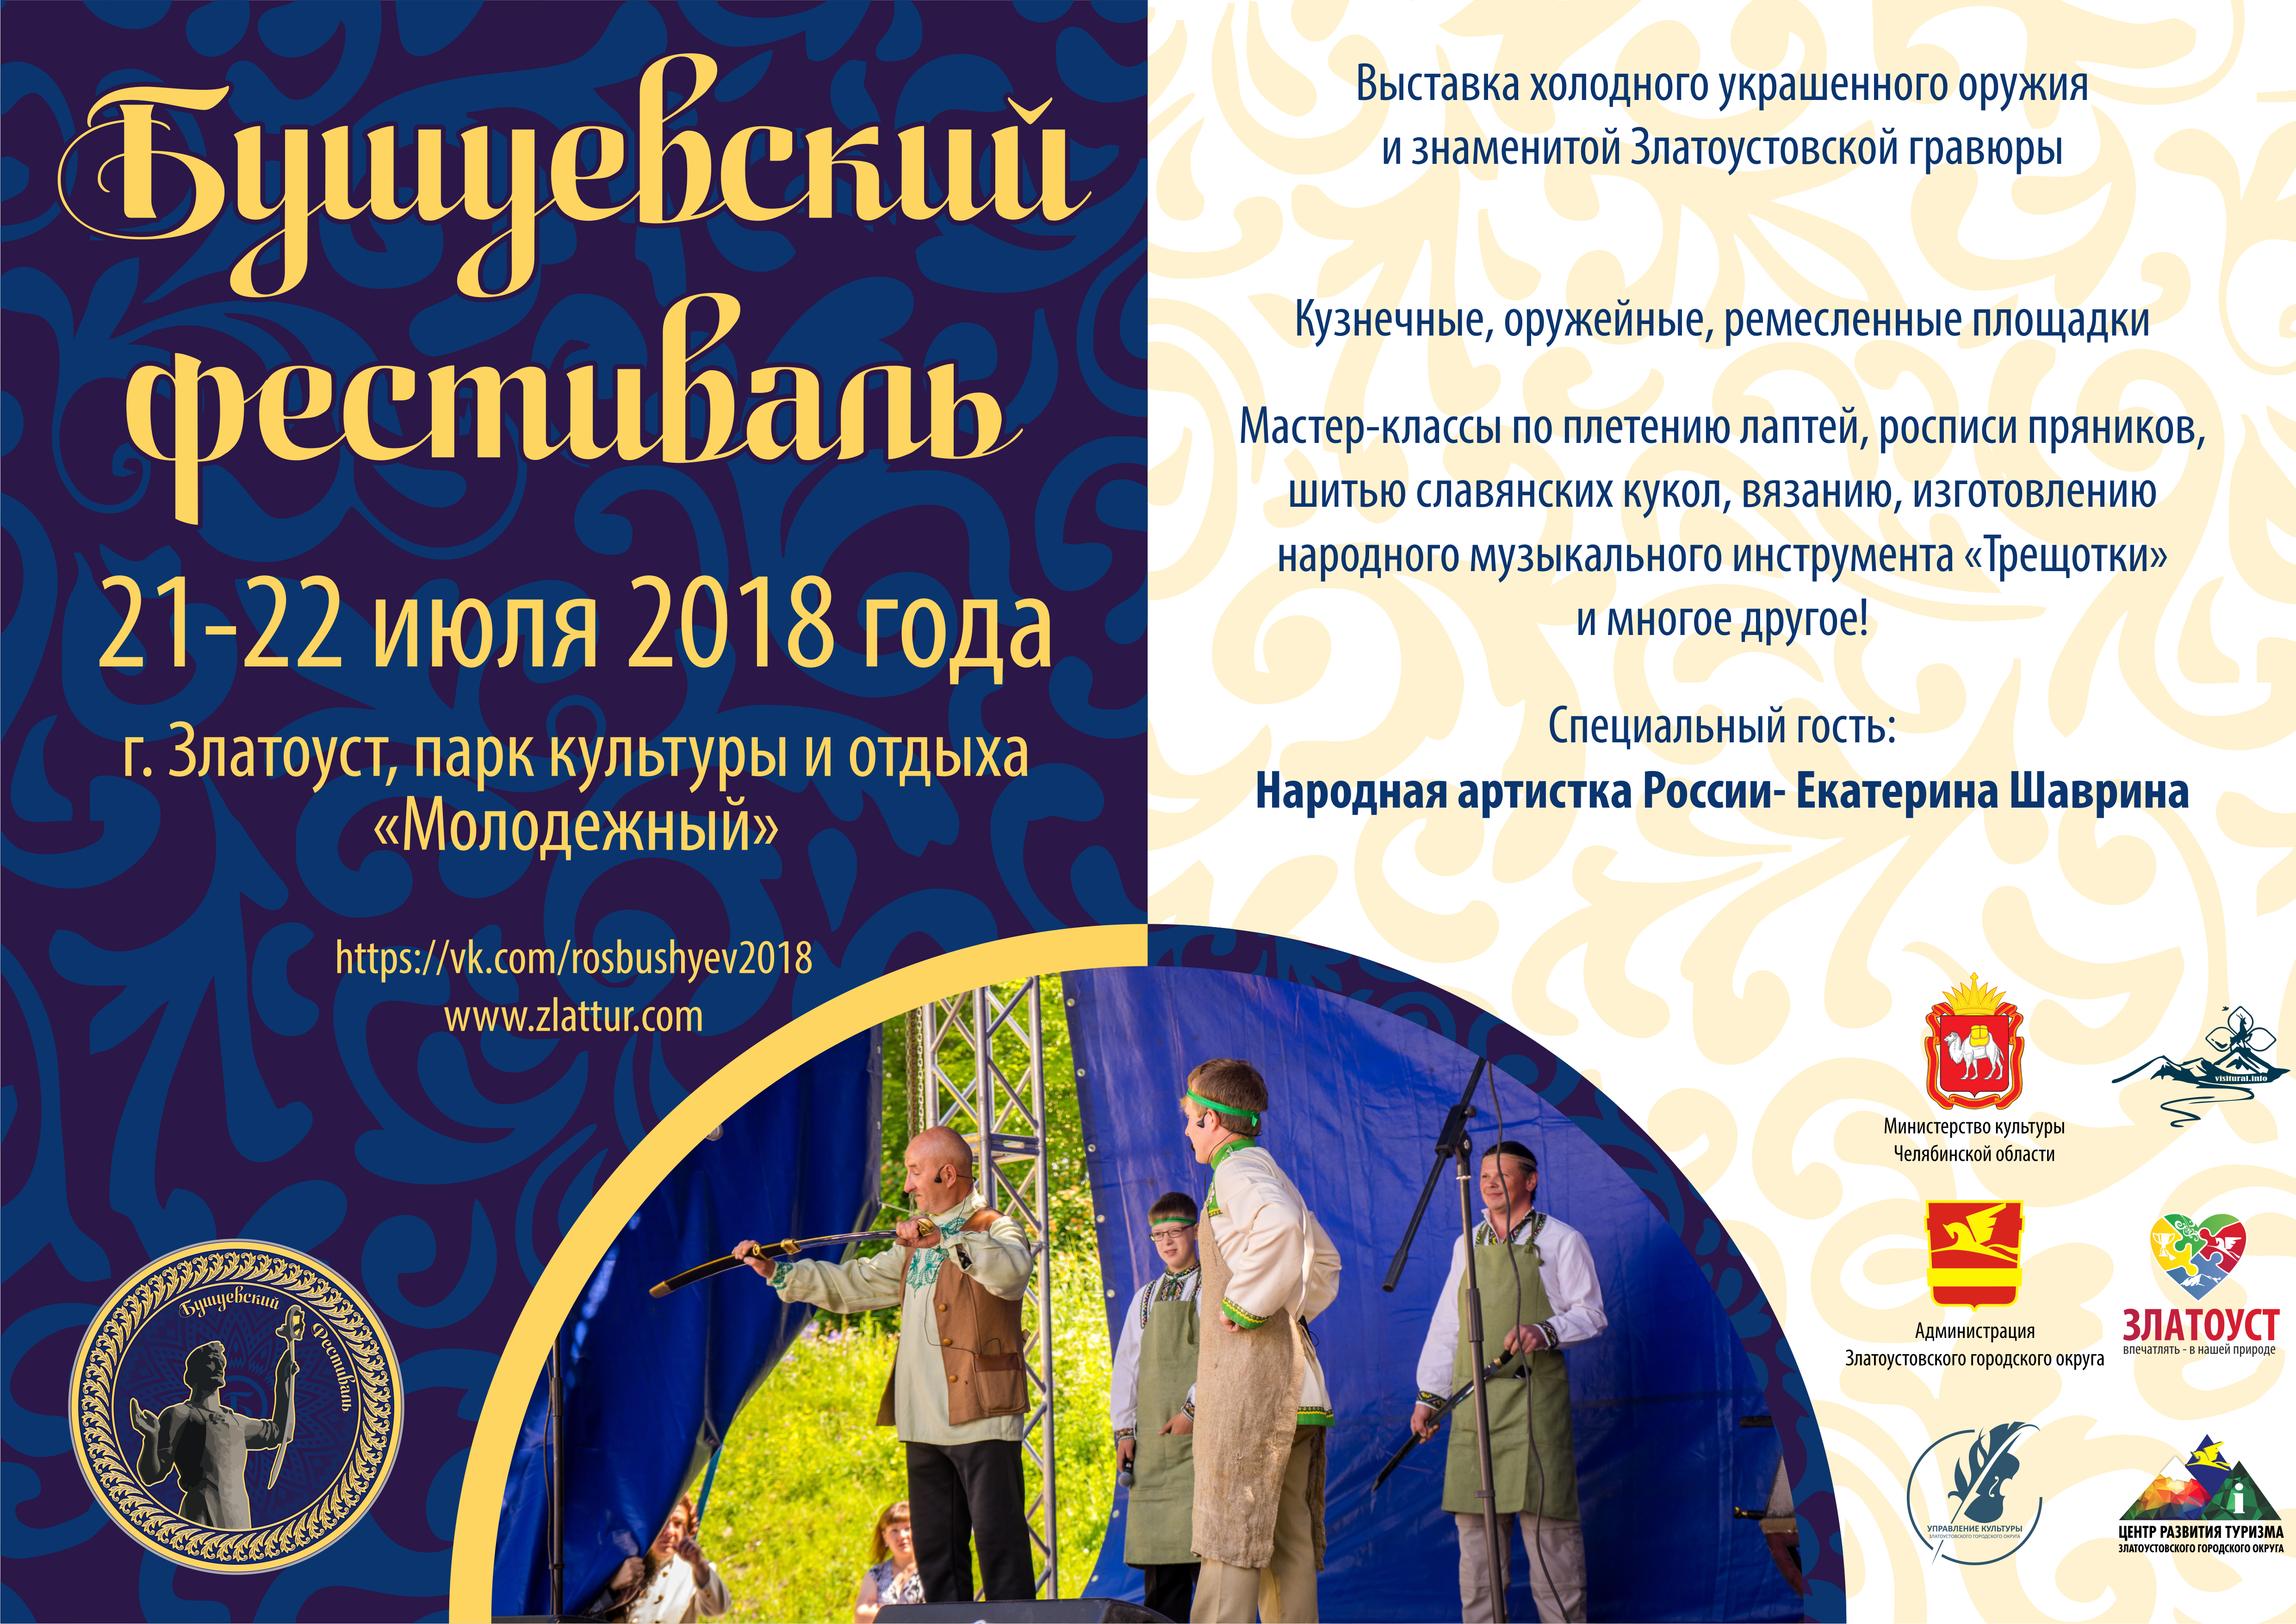 Бушуевский фестиваль во всей красе покажет историческое наследие Златоуста